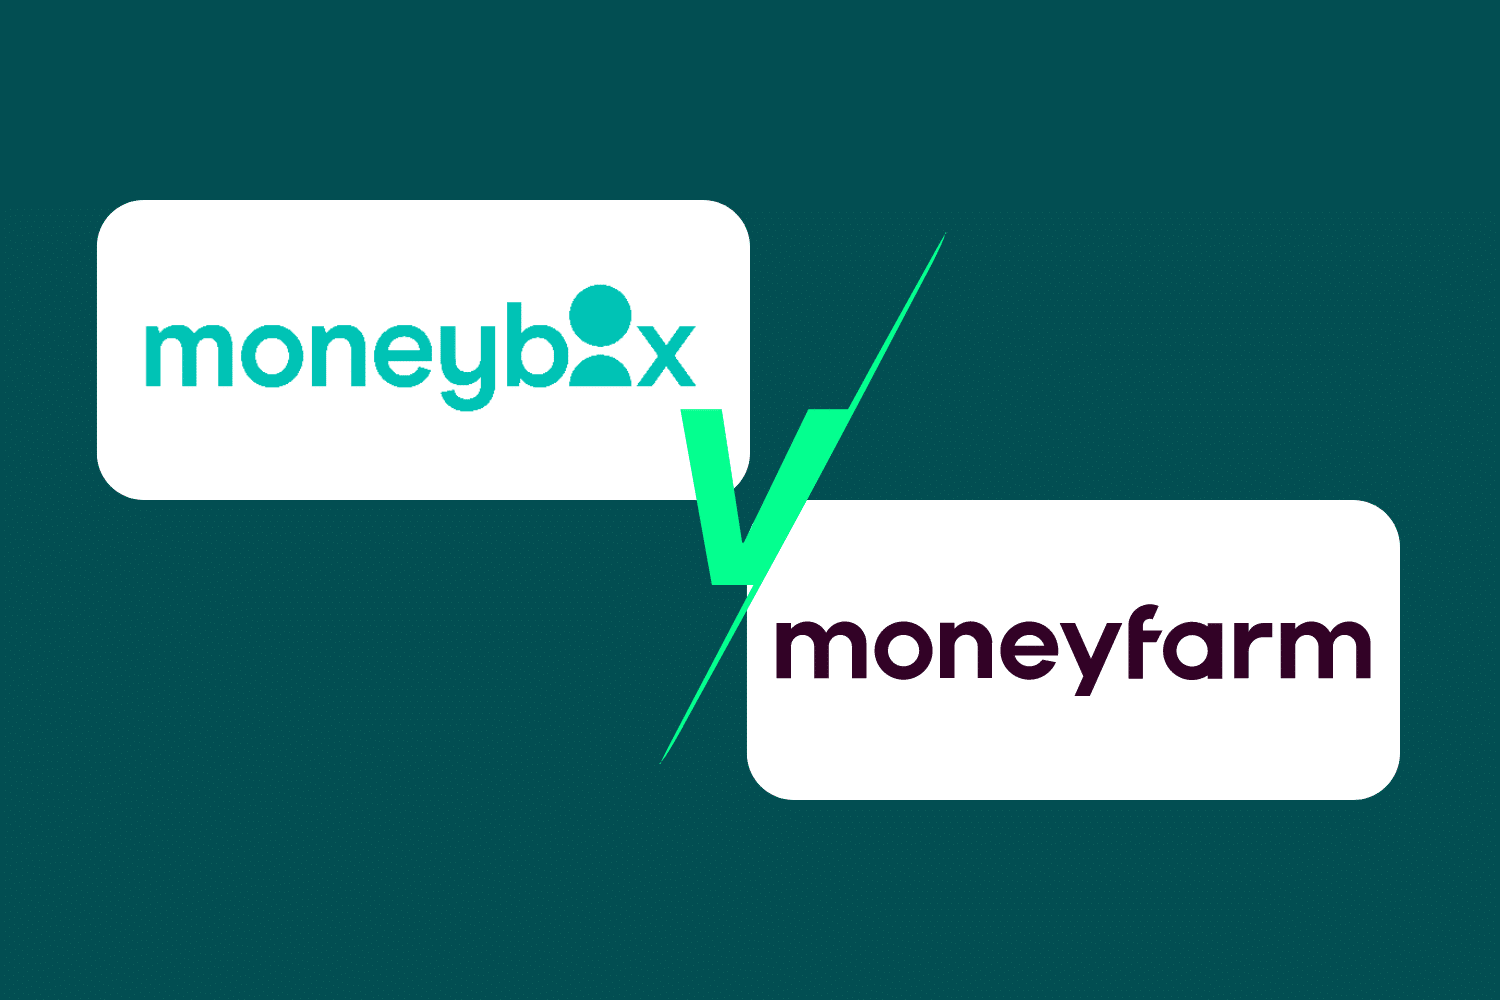 moneybox v moneyfarm